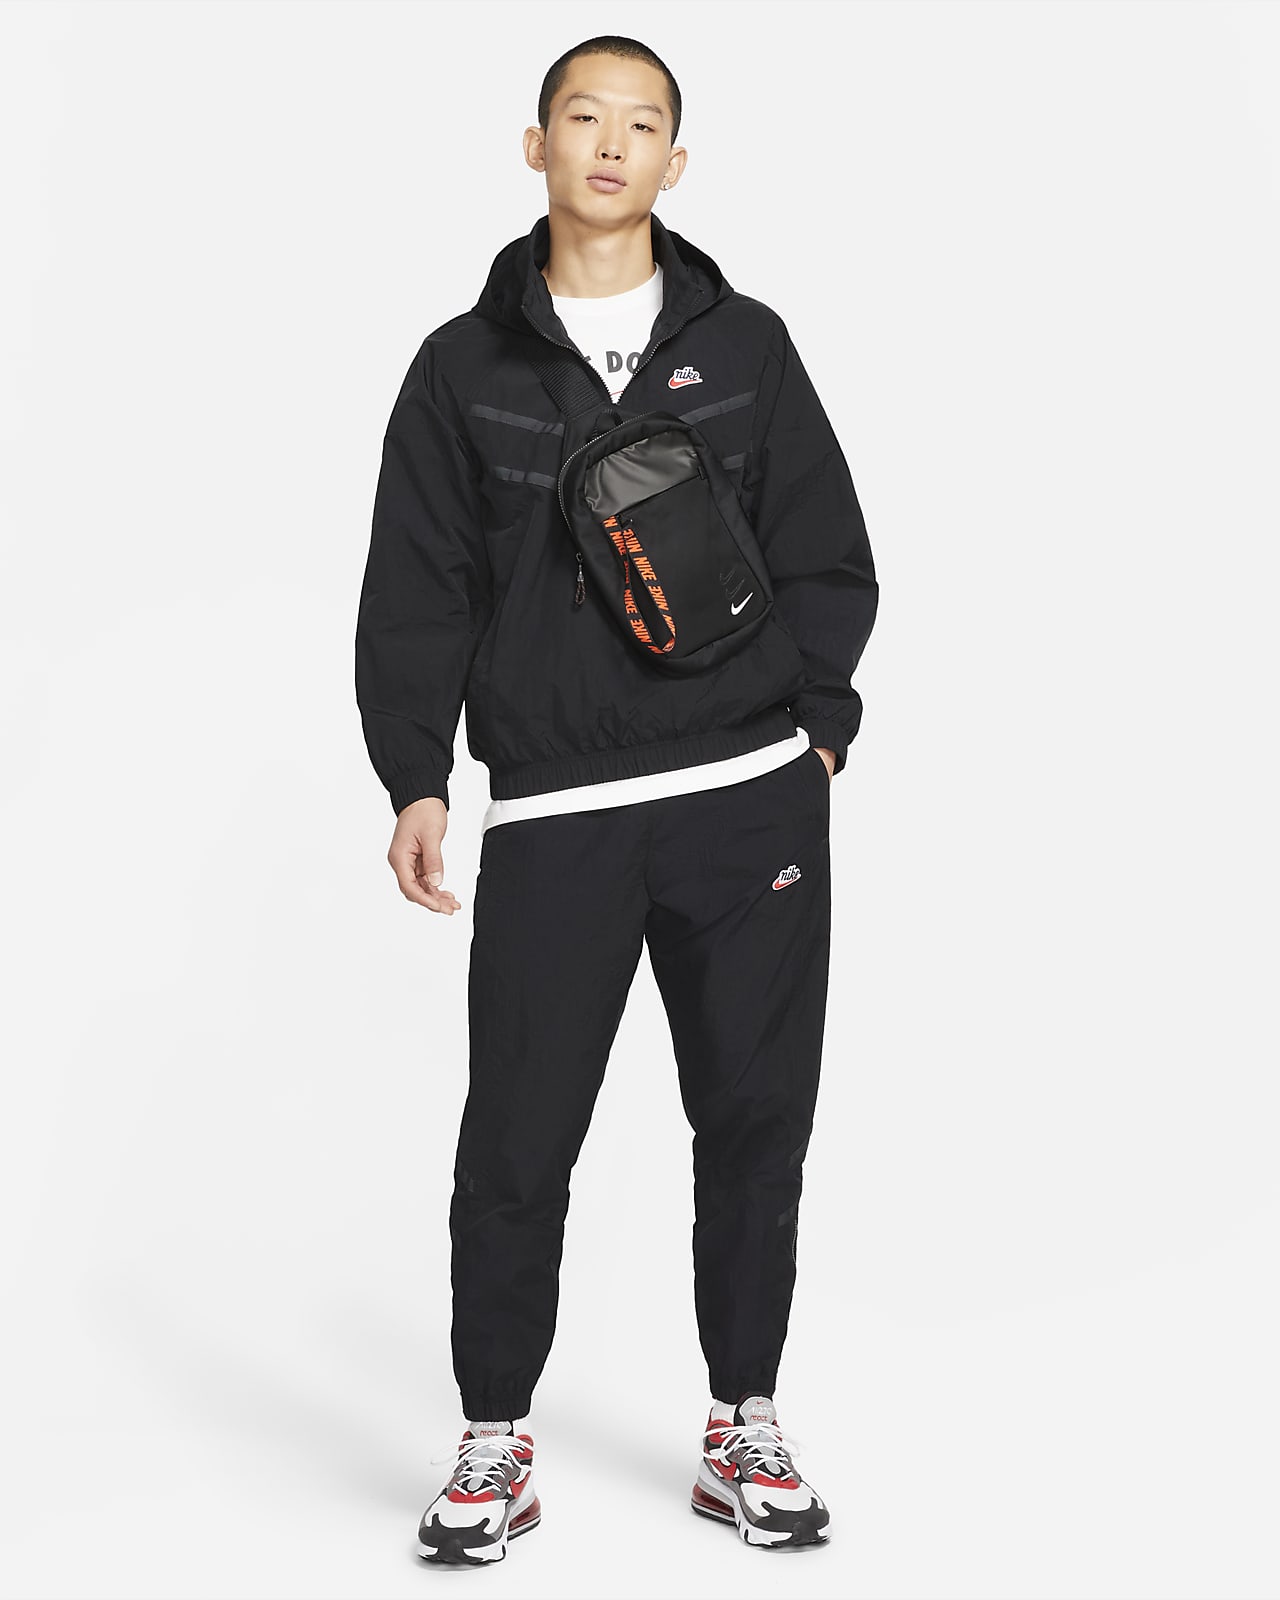 Nike公式 ナイキ スポーツウェア ヘリテージ ウィンドランナー メンズ ウーブン パンツ オンラインストア 通販サイト